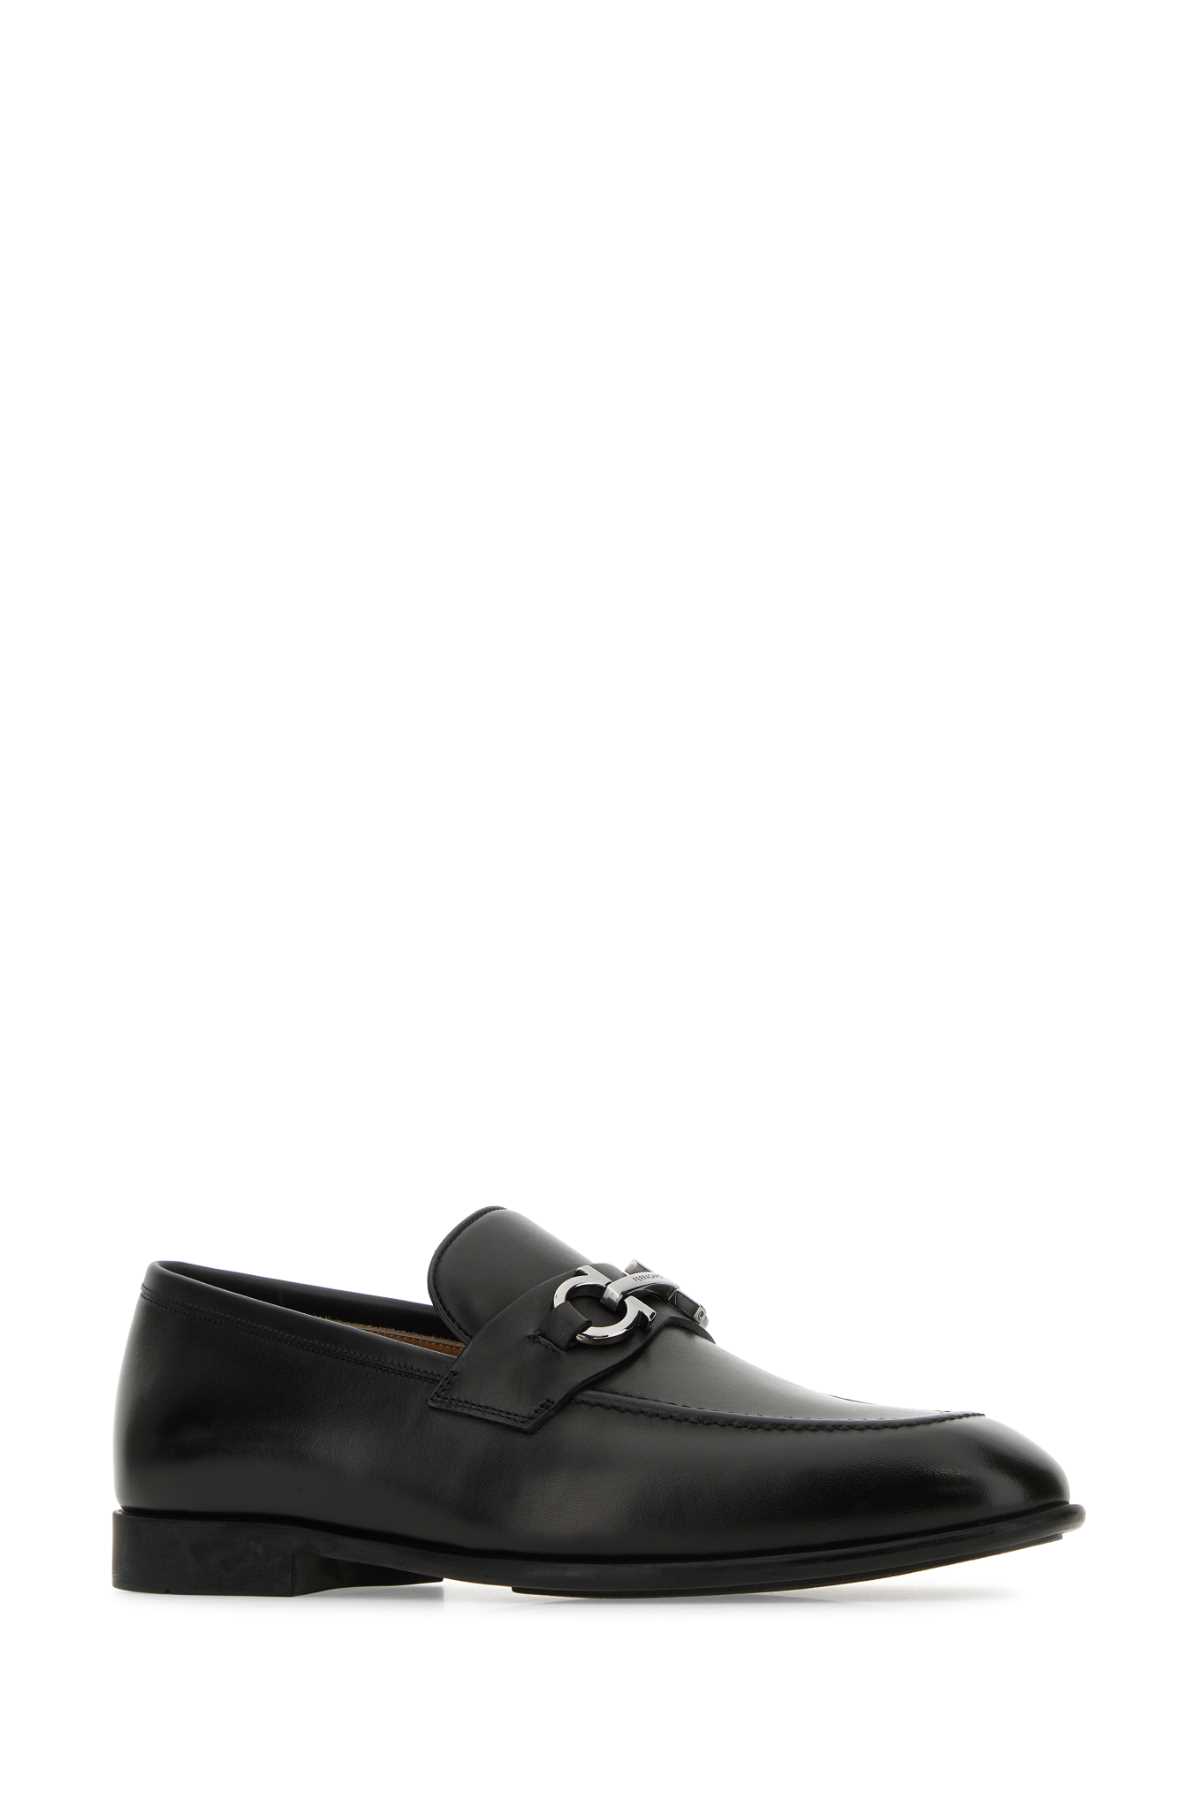 Shop Ferragamo Black Leather Foster Loafers In Nerobiscotto